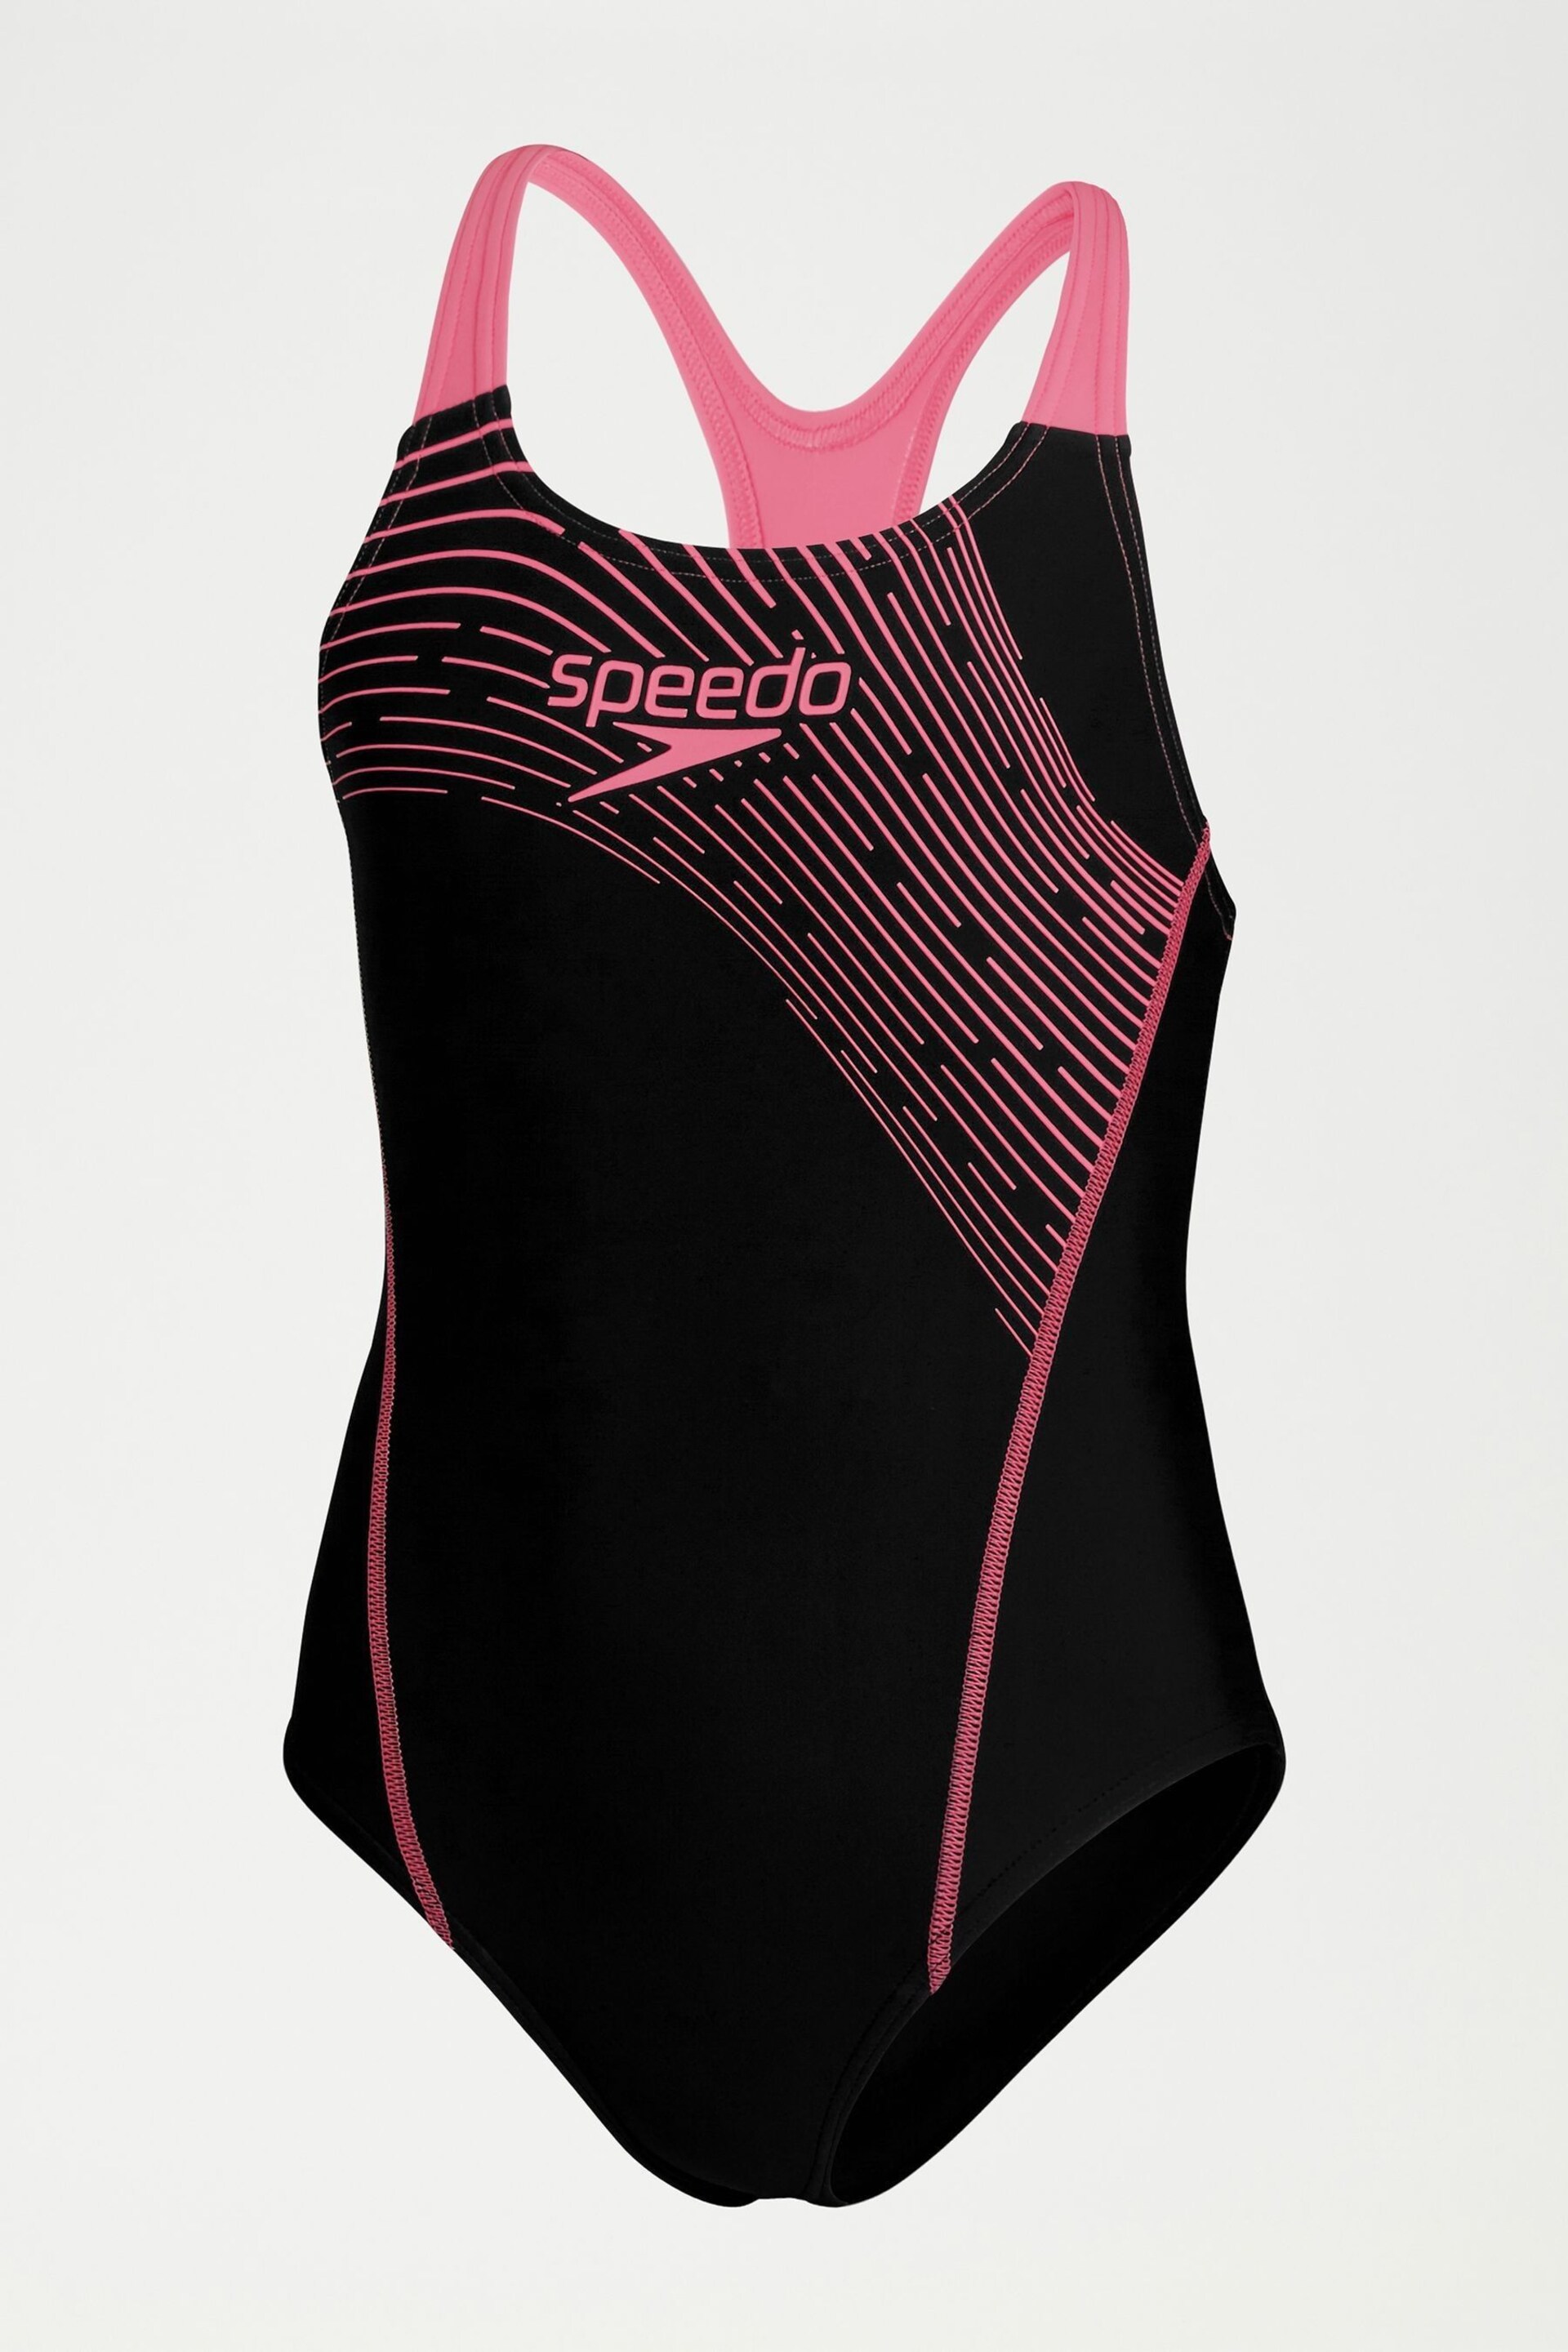 Speedo Girls Medley Logo Medalist Black Swimsuit - Image 1 of 4